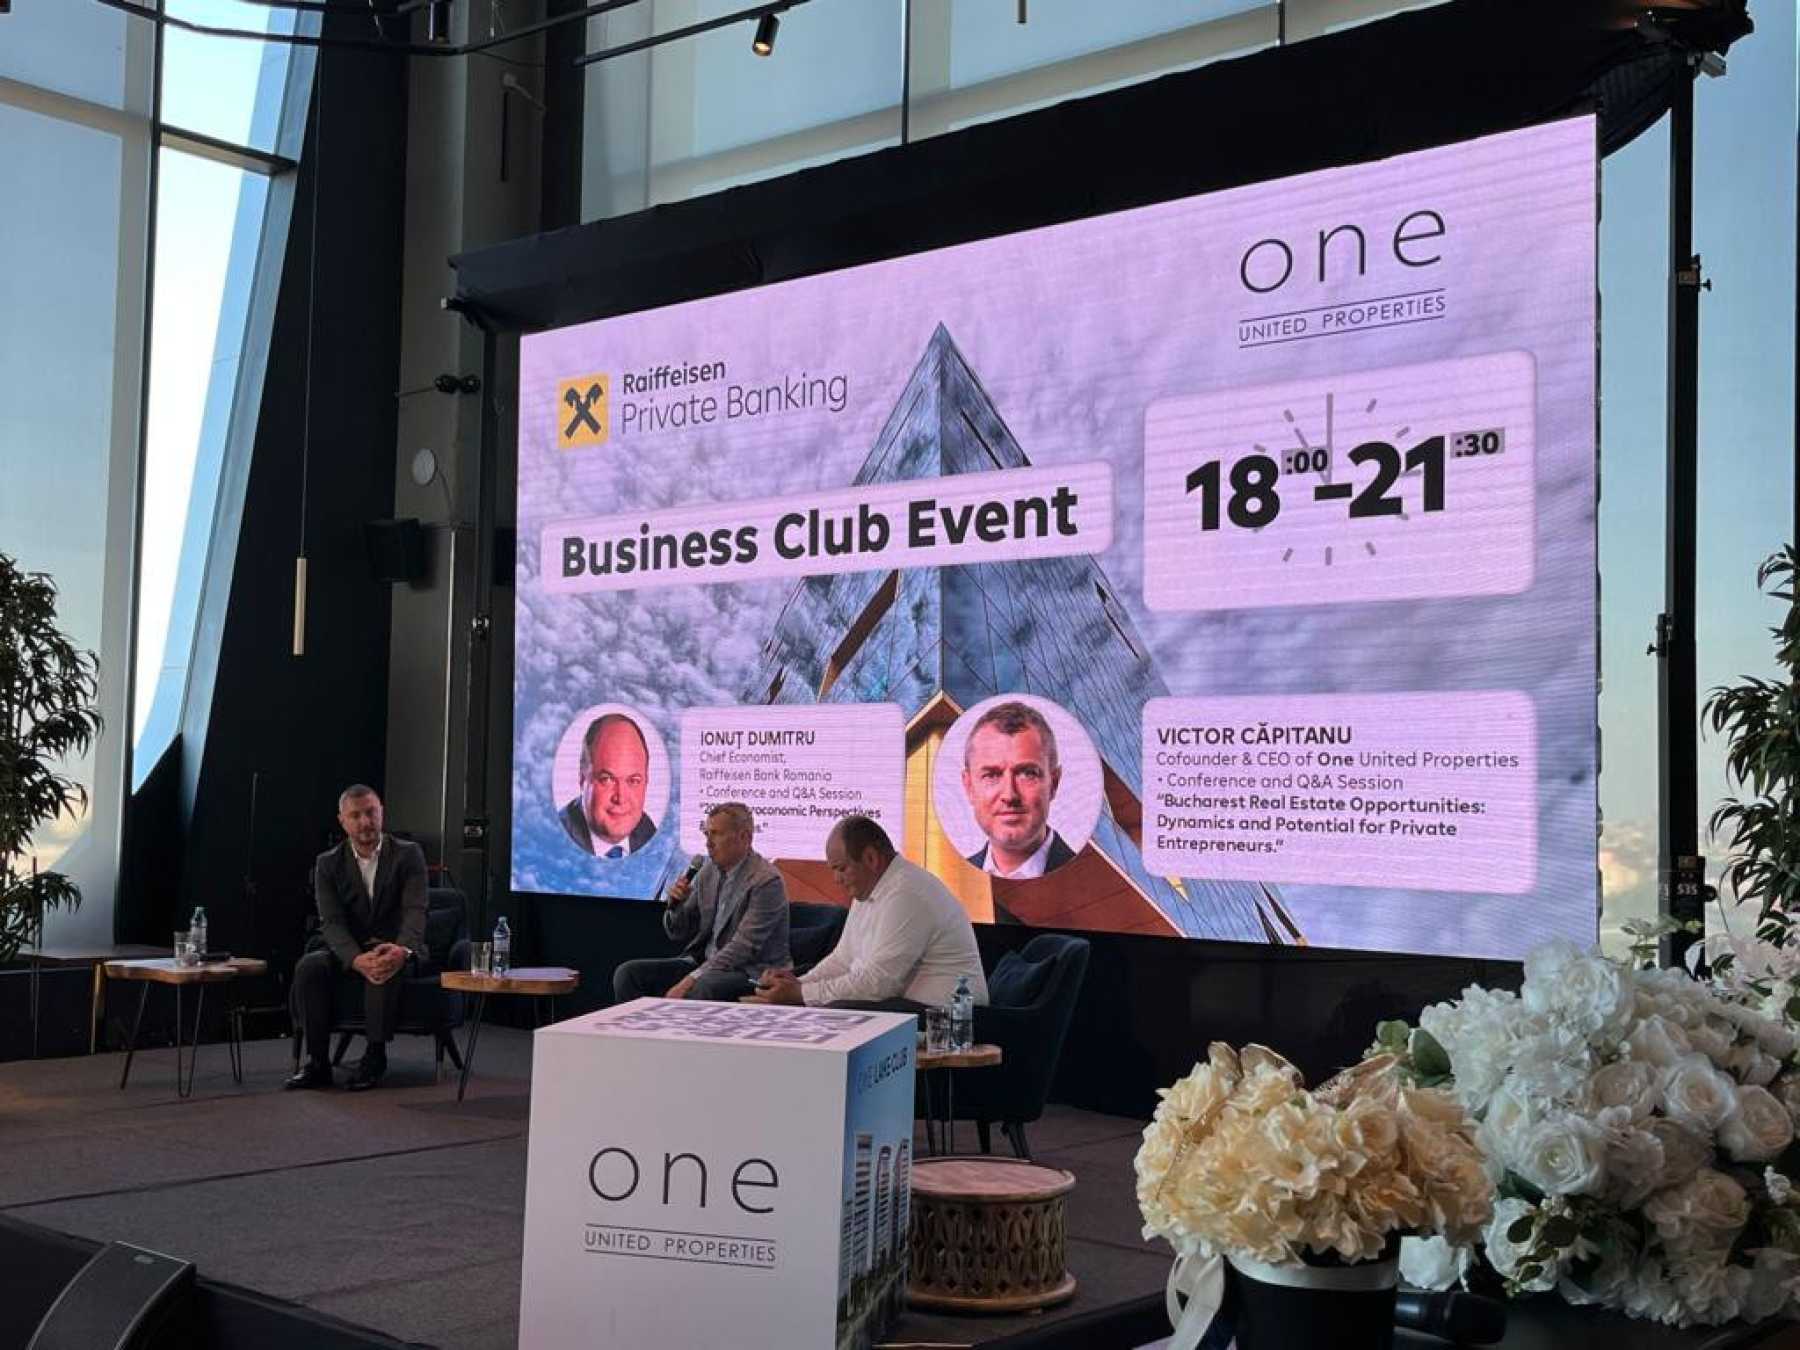 ONE Tower - Locul de întâlnire pentru oamenii de afaceri de top în cadrul primului Business Club Evening organizat de Raifeissen Bank